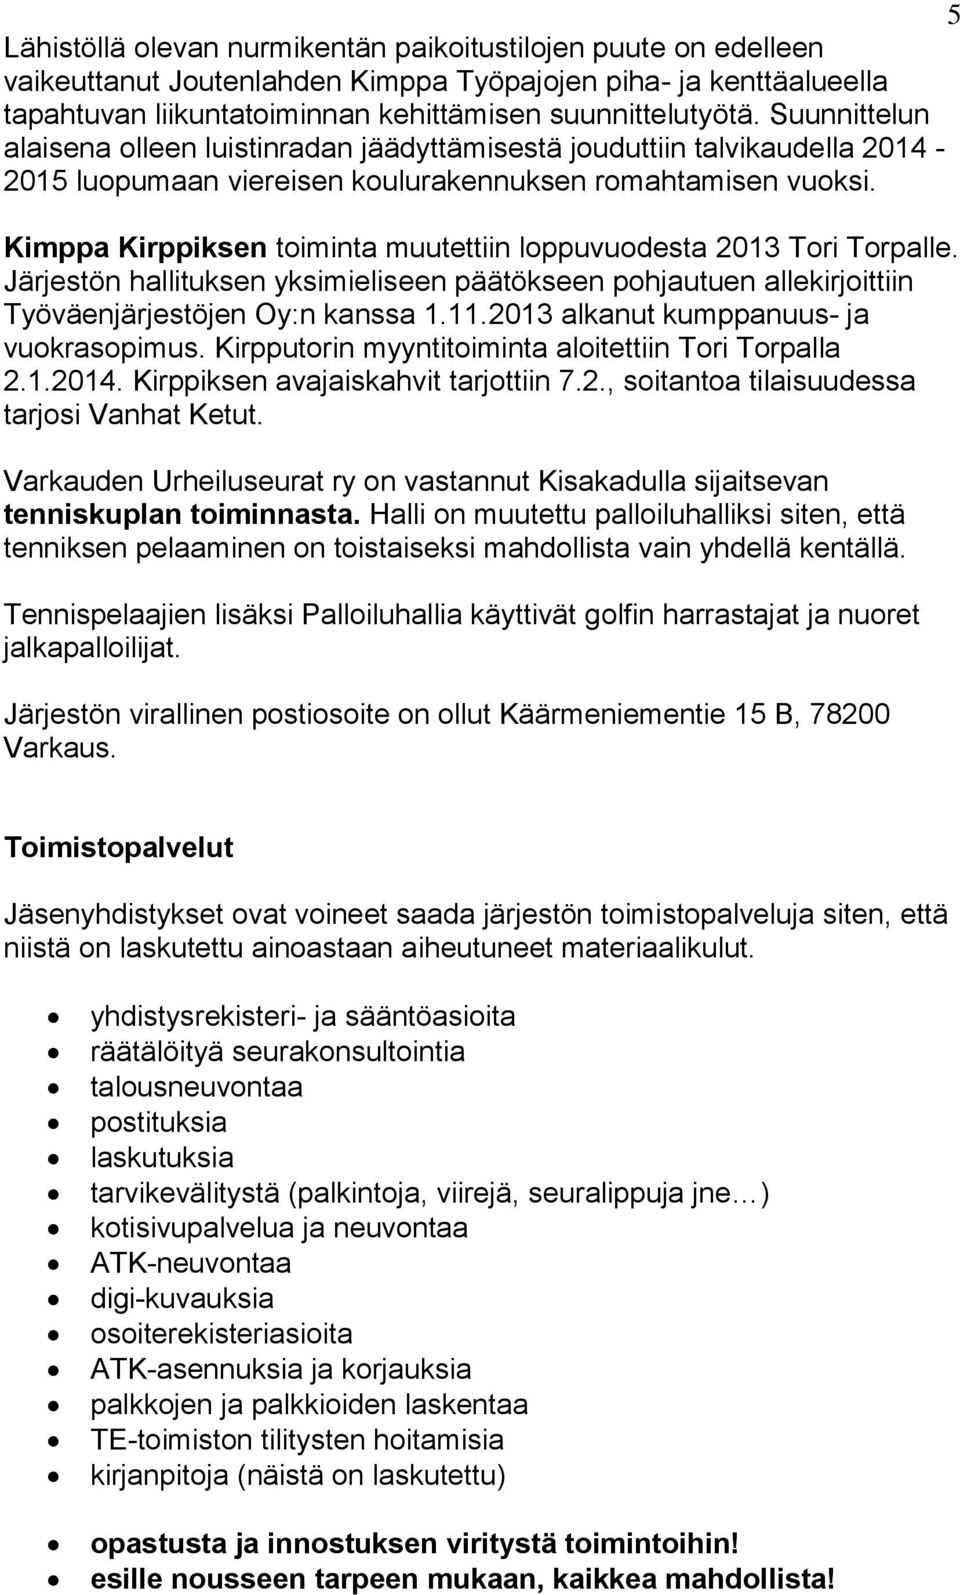 Kimppa Kirppiksen toiminta muutettiin loppuvuodesta 2013 Tori Torpalle. Järjestön hallituksen yksimieliseen päätökseen pohjautuen allekirjoittiin Työväenjärjestöjen Oy:n kanssa 1.11.